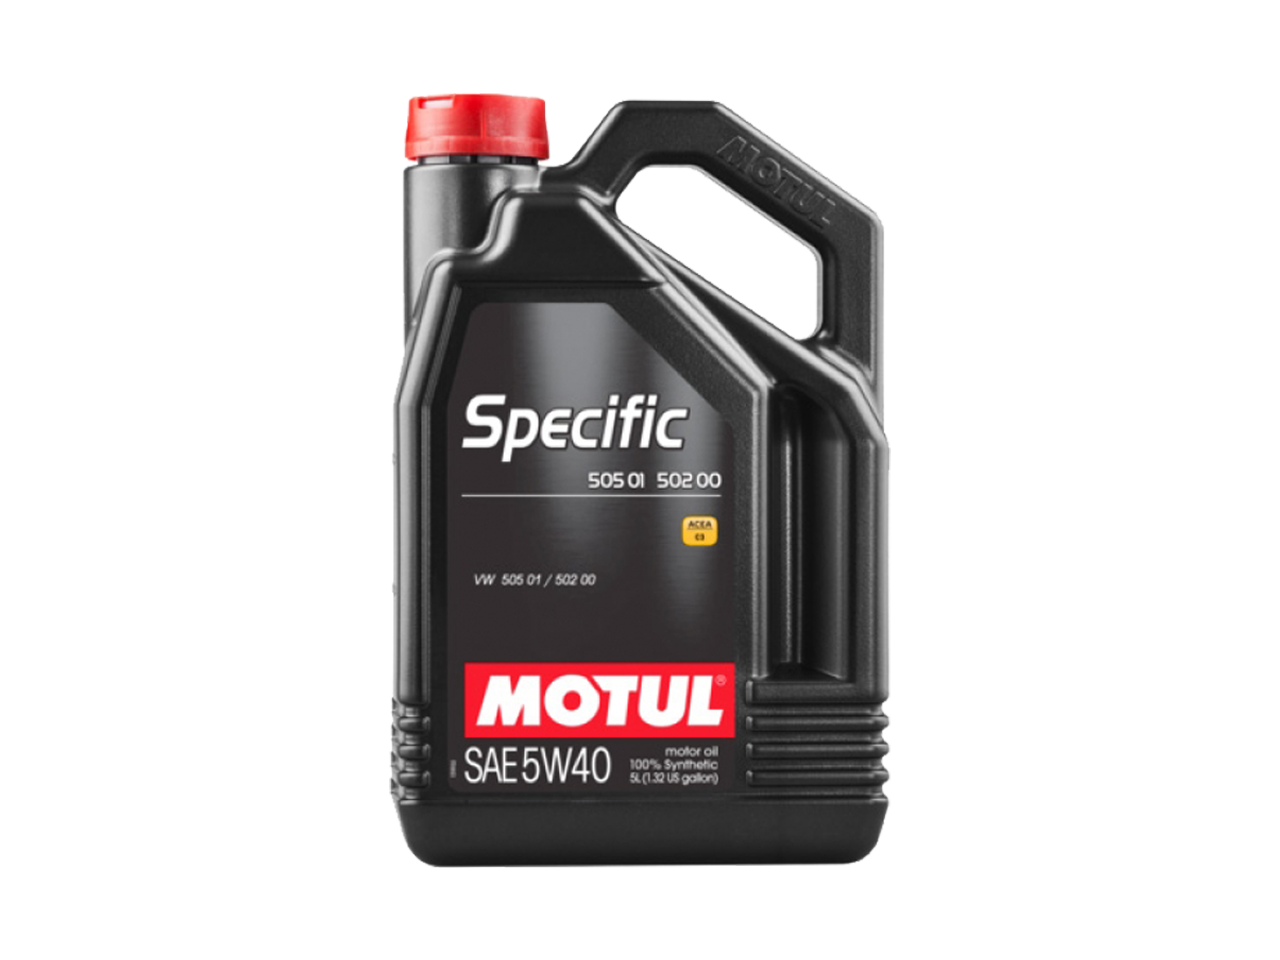 Купить Моторное масло Motul SPECIFIC 502 00 / 505 00 / 505 01